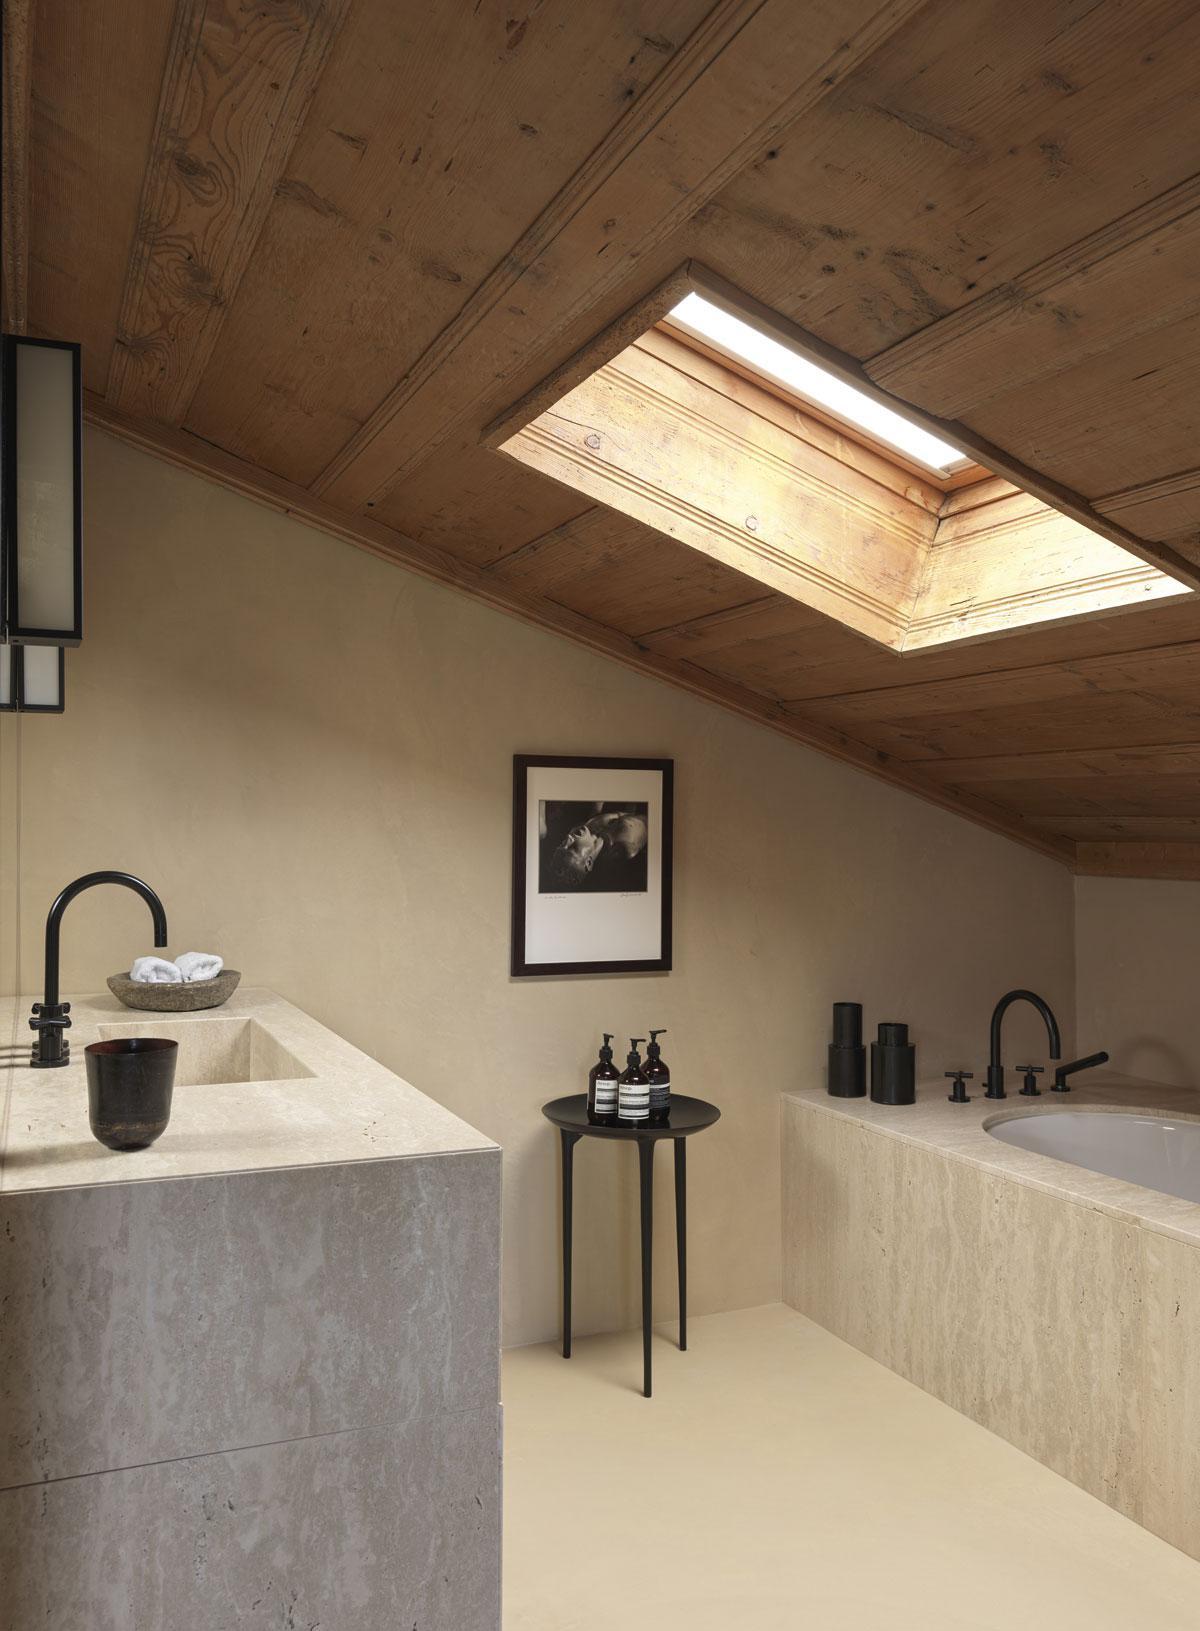 Travertijn contrasteert met het hout van het schuine dak in de hoofdbadkamer. De foto is van Leni Riefenstahl.